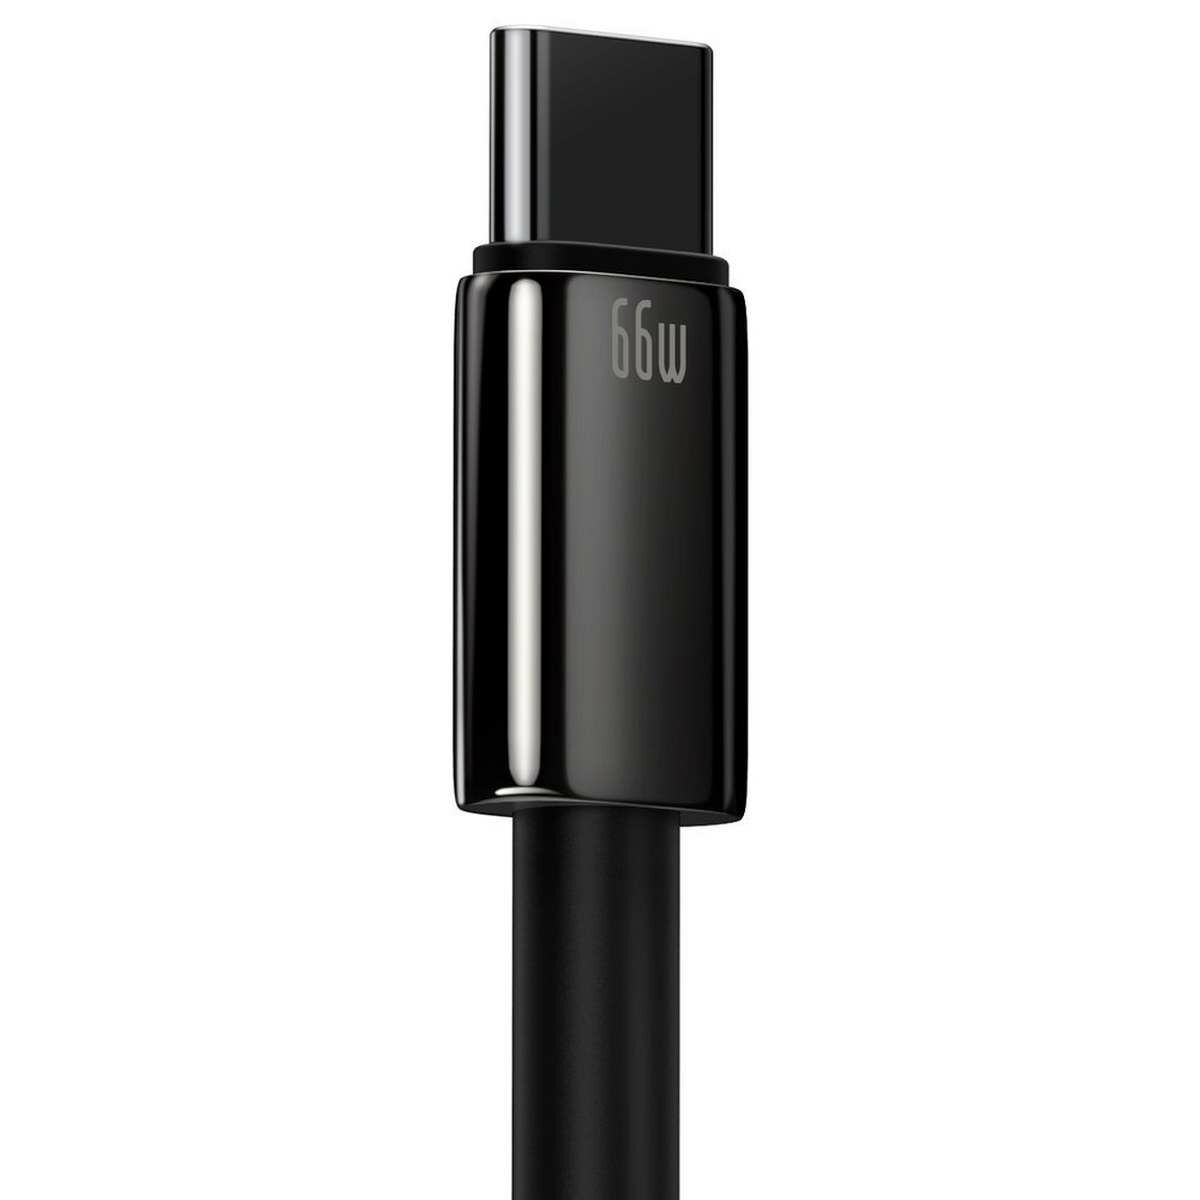 Kép 5/7 - Baseus Tungsten Gold Series USB - USB-C töltőkábel, 66W (11V/6A), 1m, fekete (CATWJ-B01)